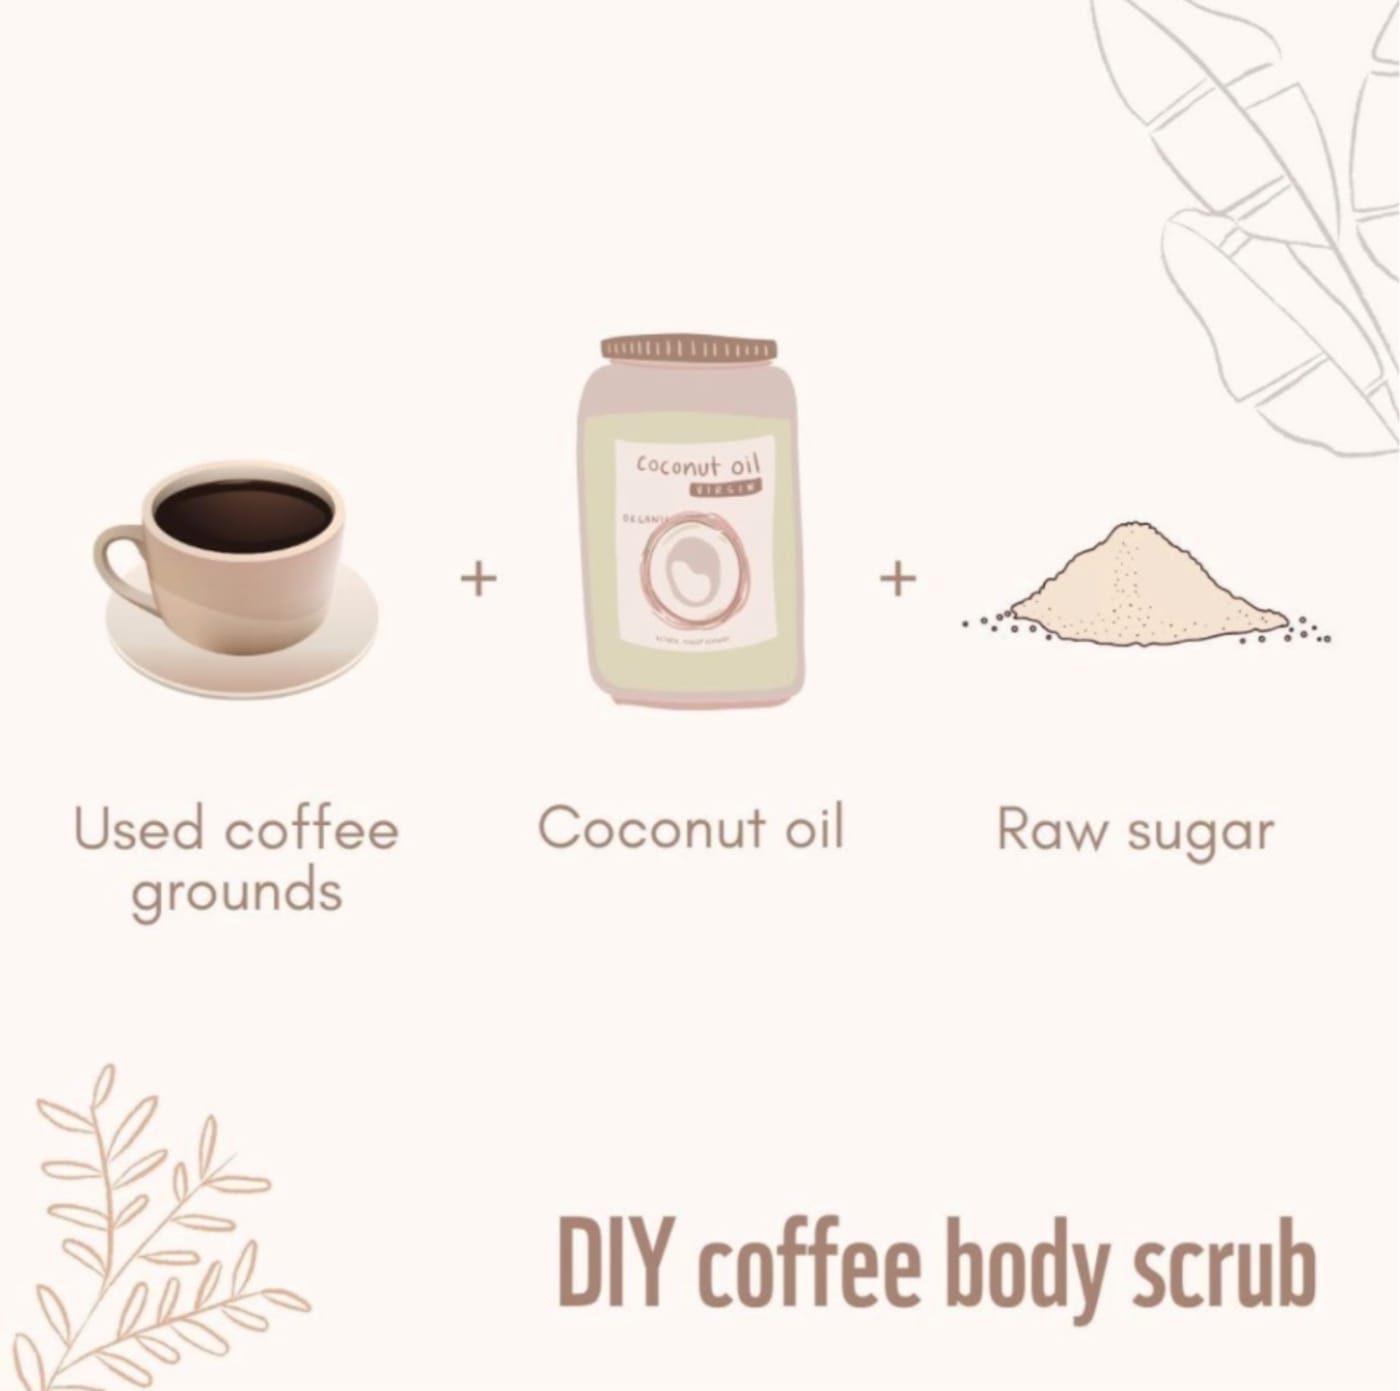 DIY coffee body scrub